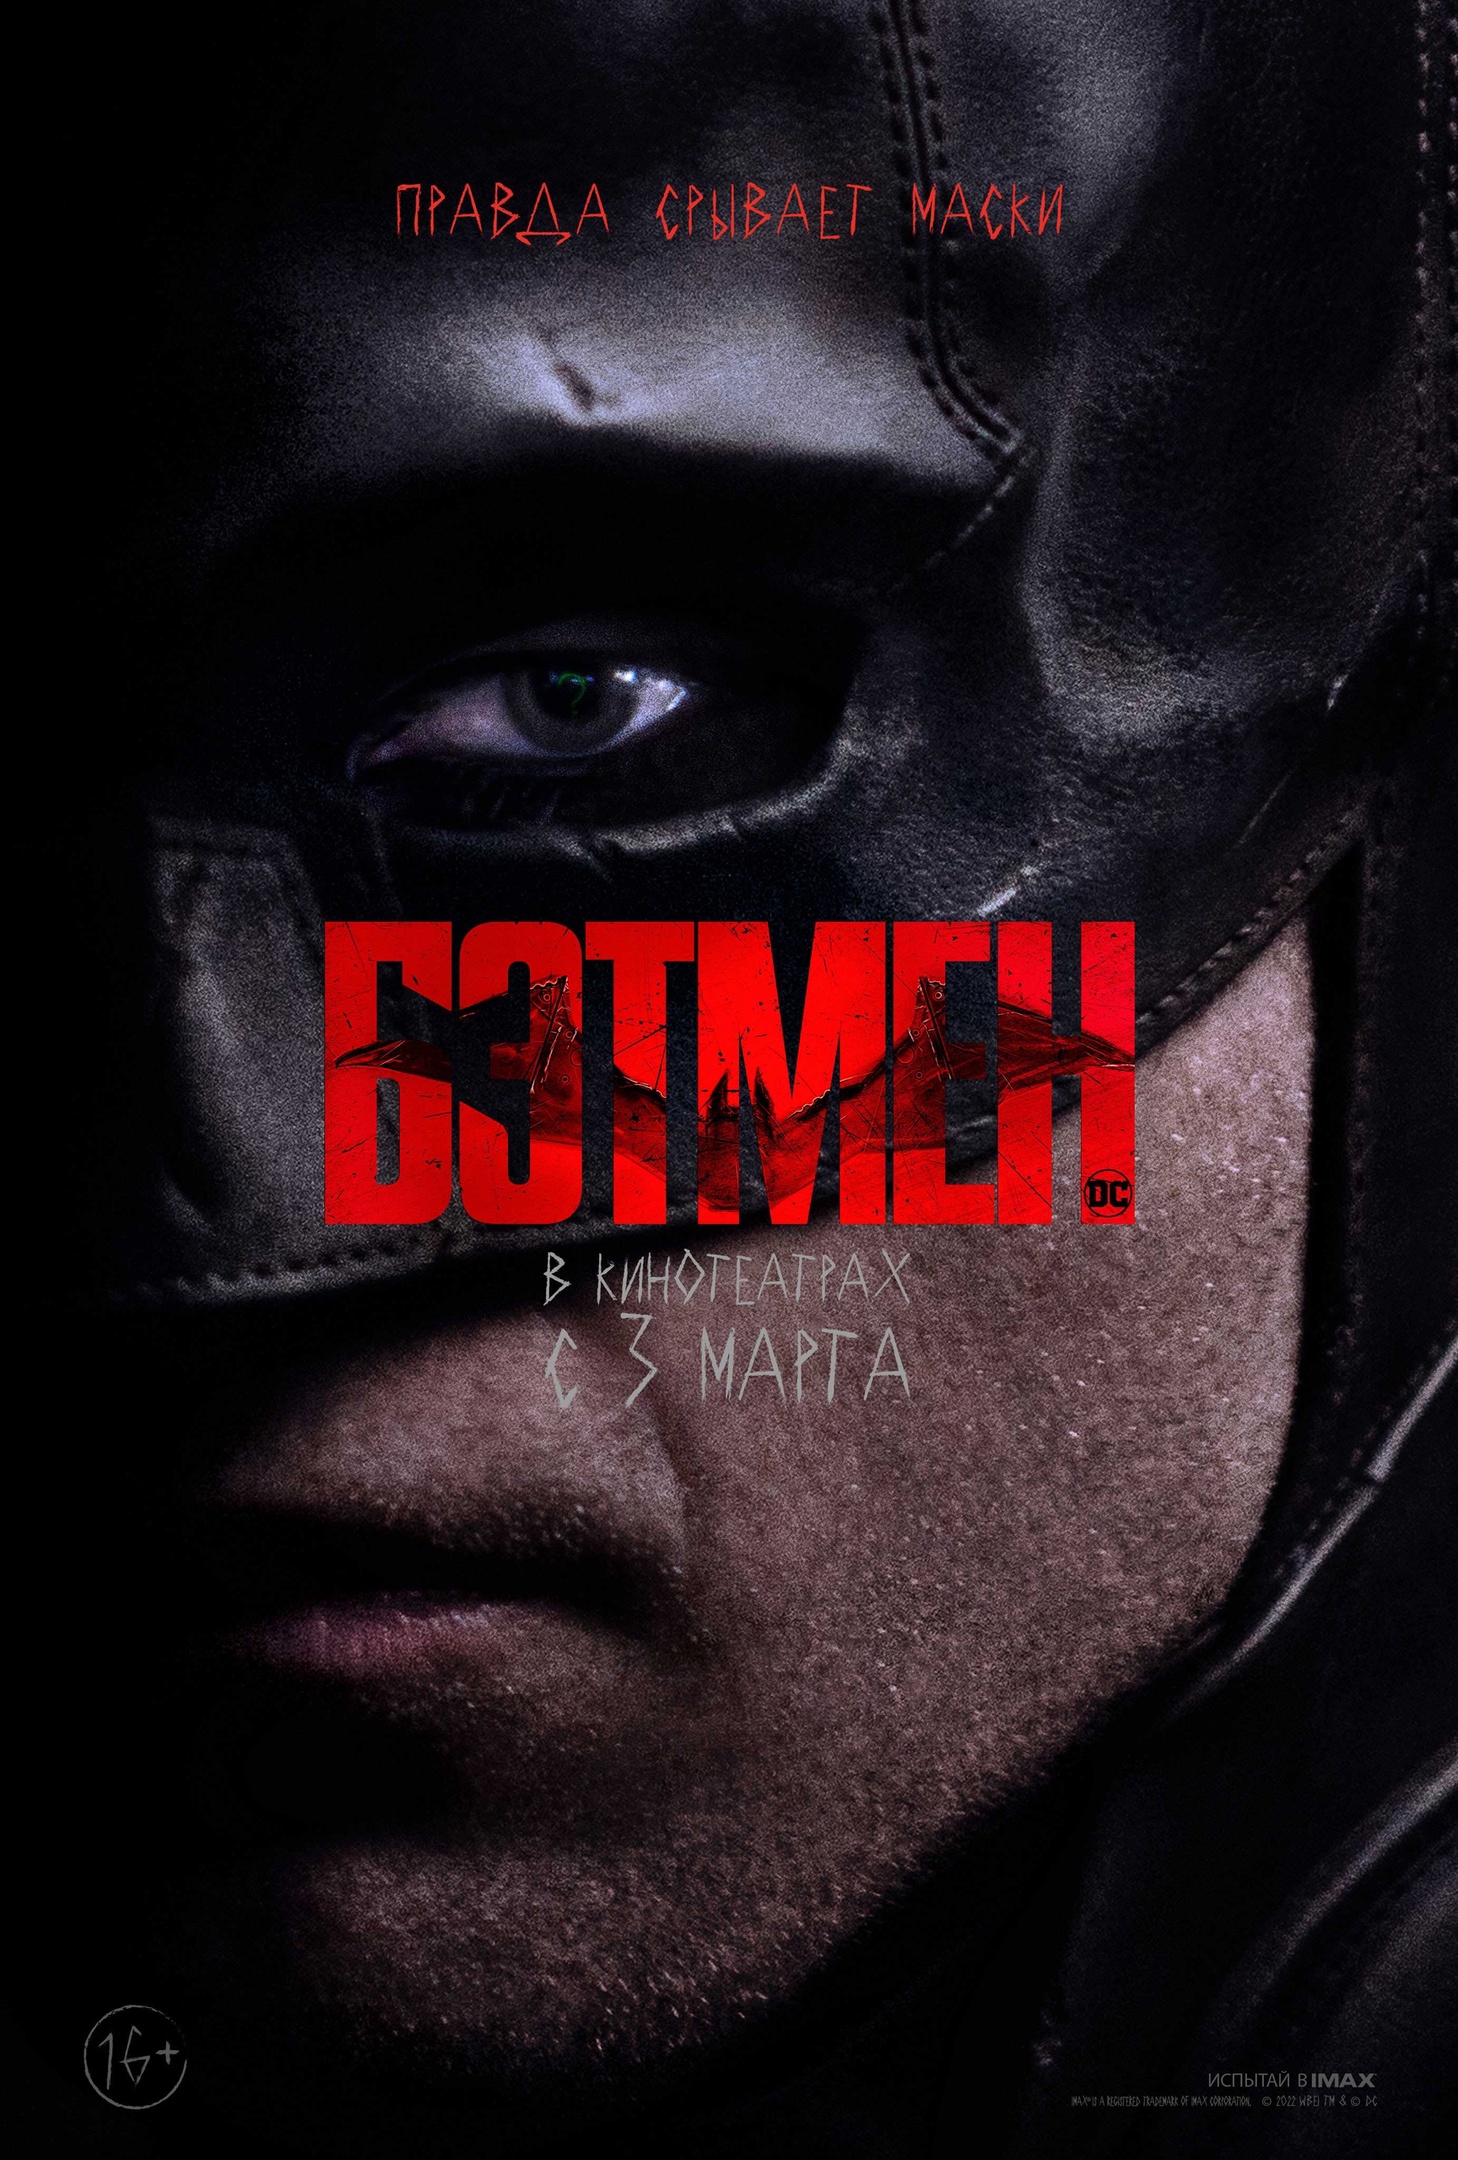 Тёмный рыцарь и компания на русских постерах фильма "Бэтмен"